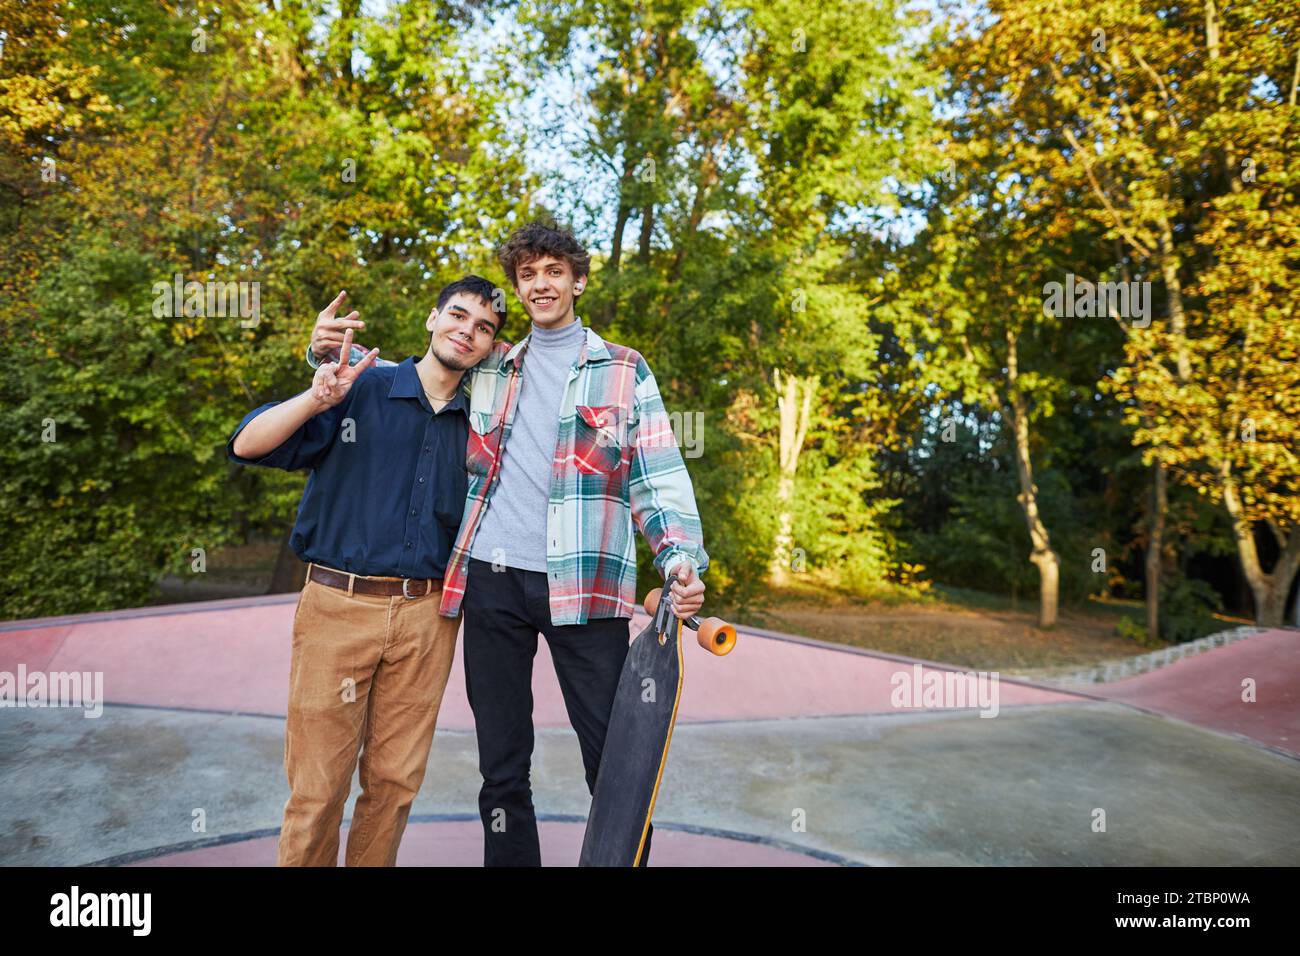 Zwei Teenager machen Siegeszeichen in einem Skatepark Stockfoto